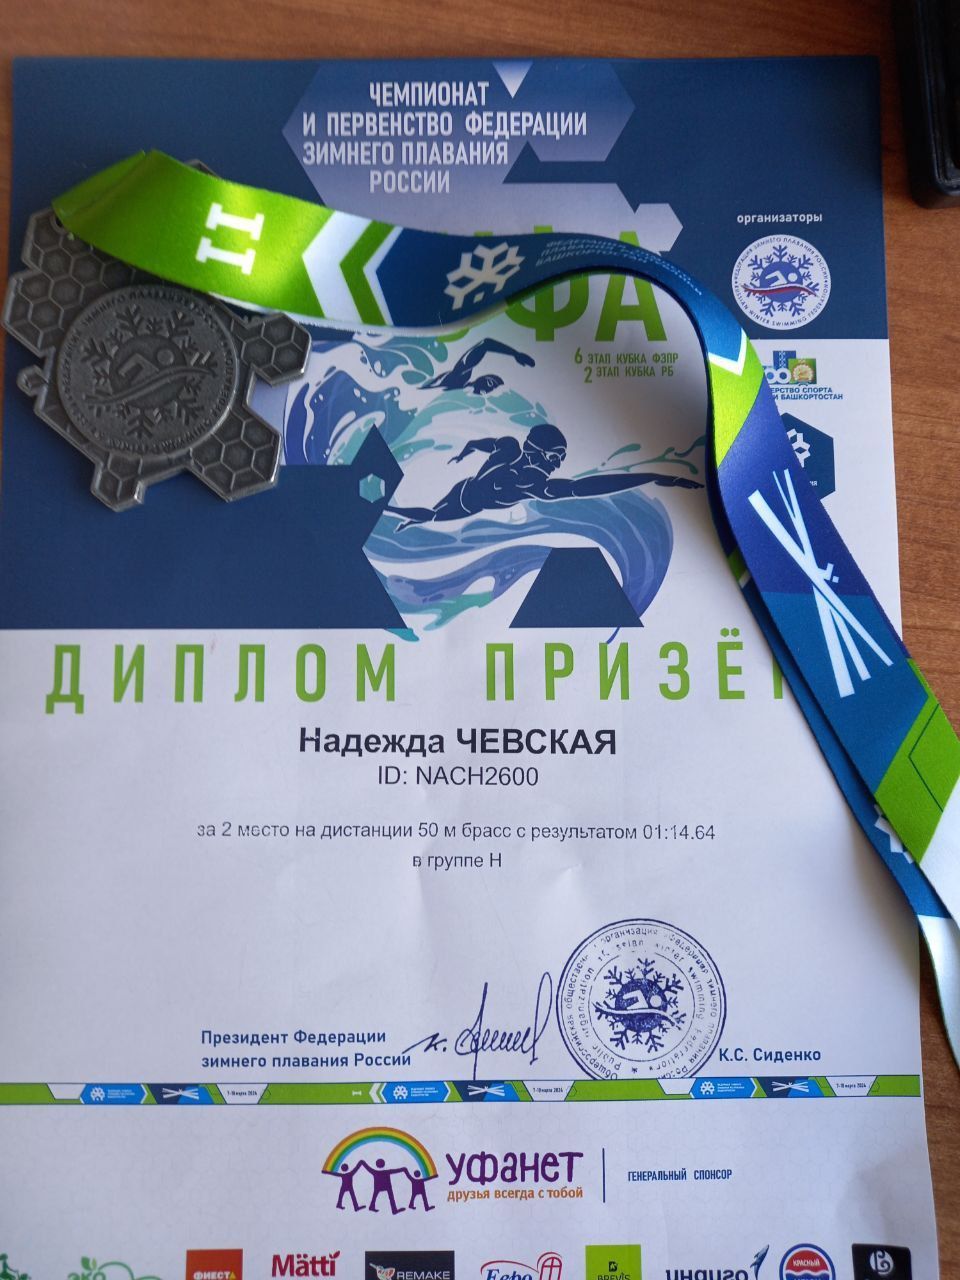 Член Ульяновского реготделения заняла второе место на Чемпионате и Первенстве Федерации зимнего плавания России